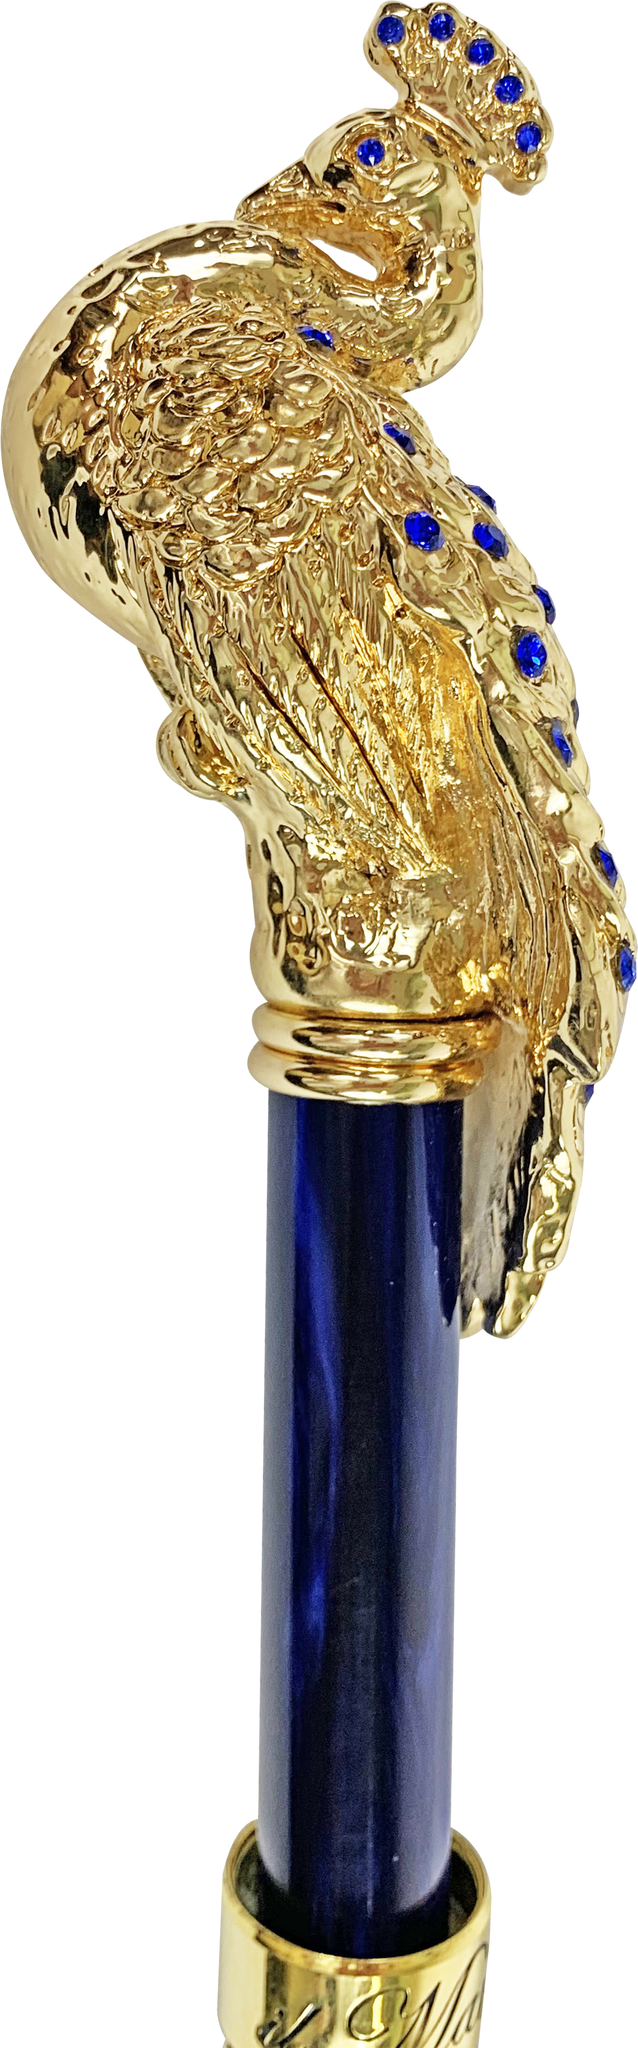 il Marchesato Blue Peacock Umbrella